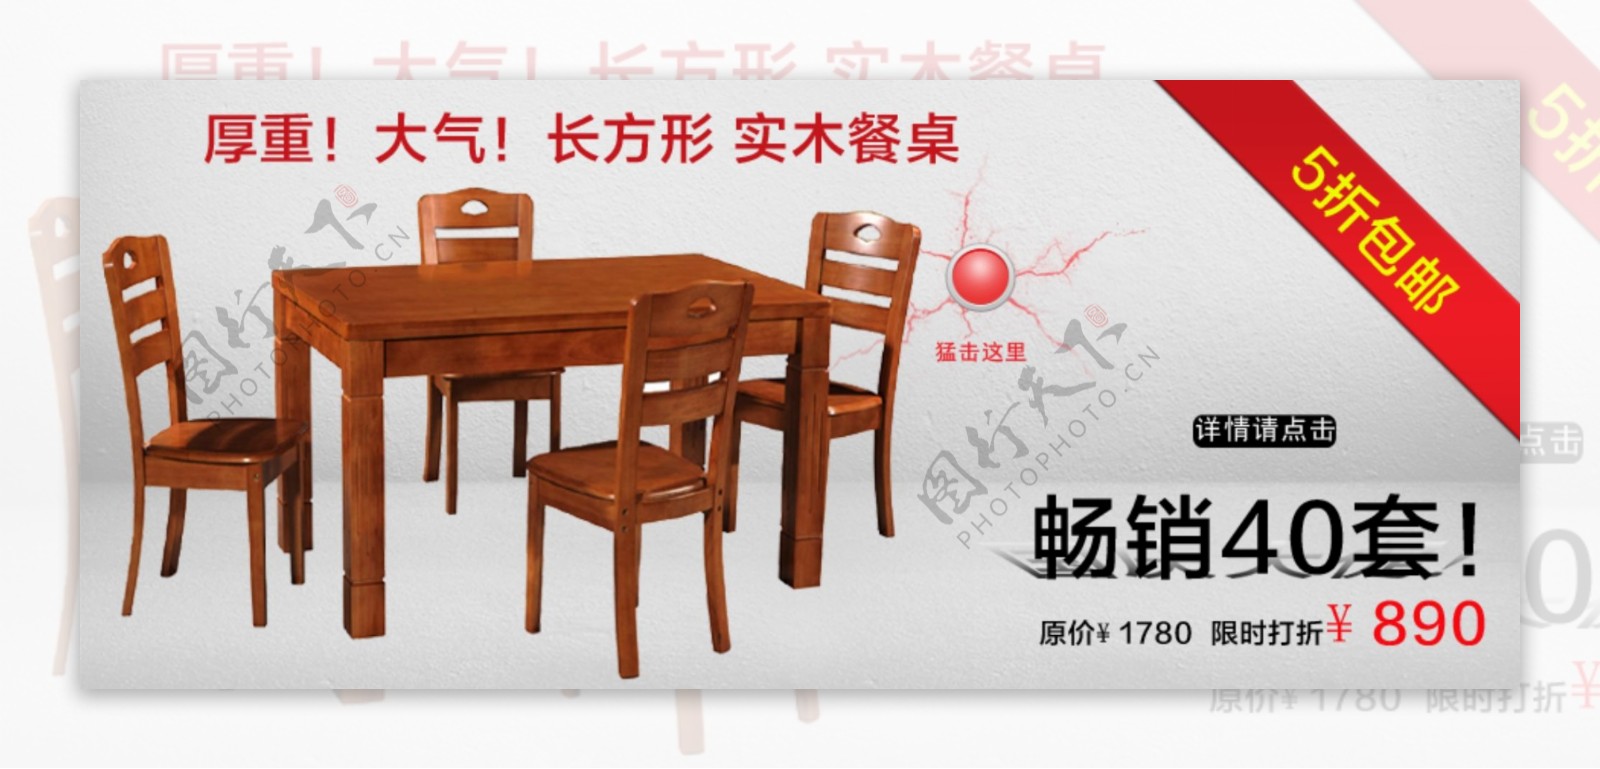 实木餐桌促销网页图片